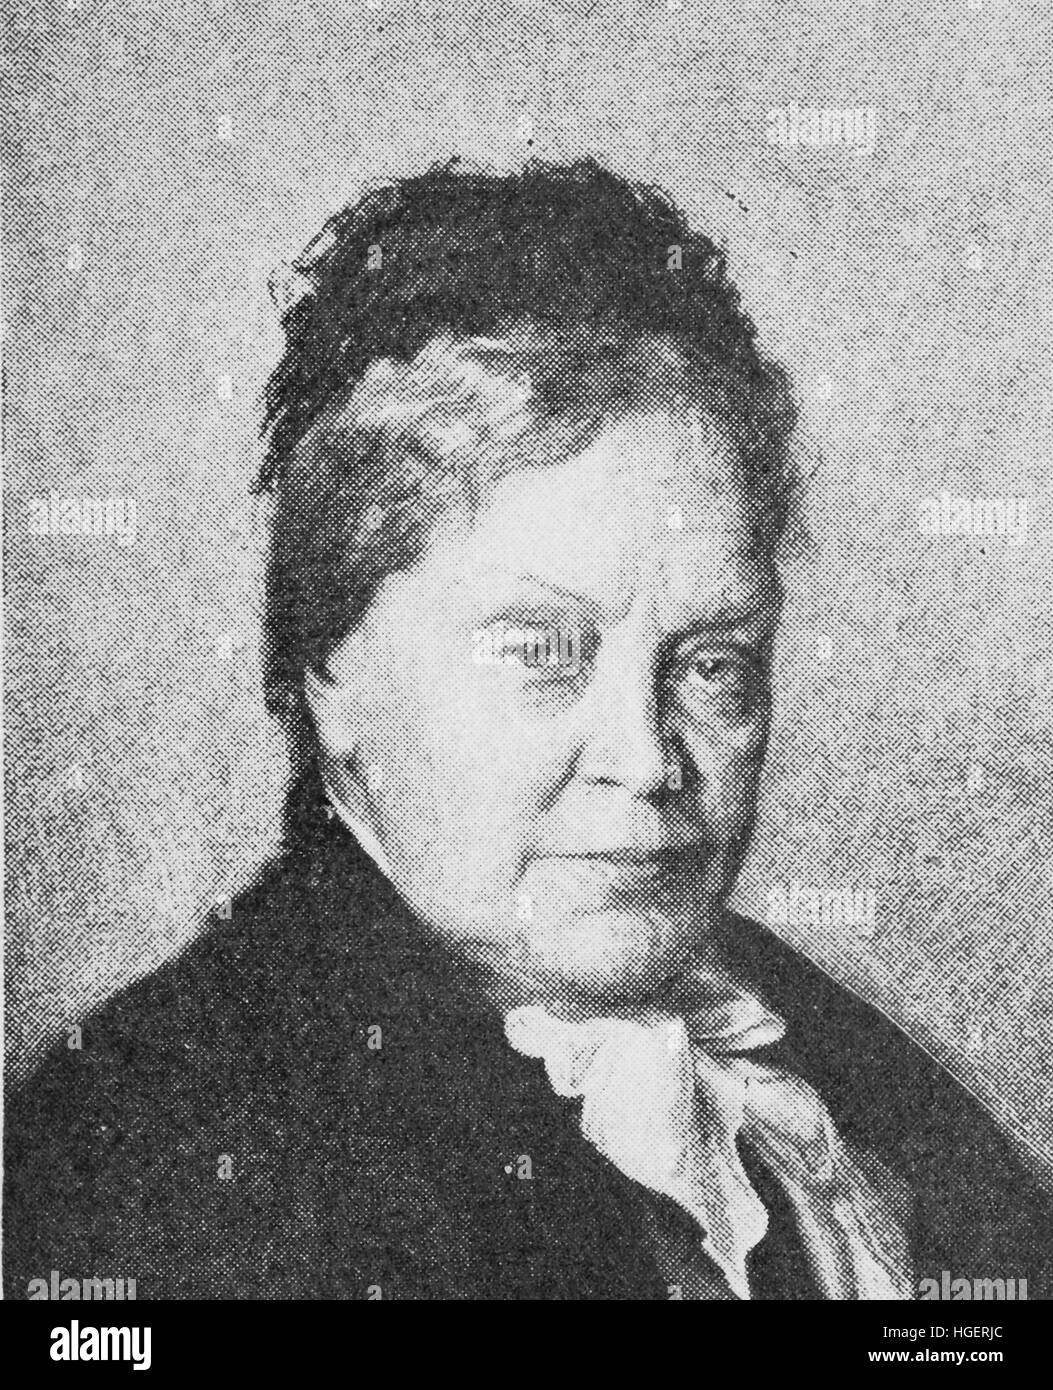 Baronin Marie von Ebner-Eschenbach, Marie Freifrau von Ebner-Eschenbach; 13. September 1830 - 12. März 1916, war ein österreichischer Schriftsteller bekannt für ihre hervorragende psychologische Romane Reproduktion eines Fotos aus dem Jahr 1895, digital verbessert Stockfoto